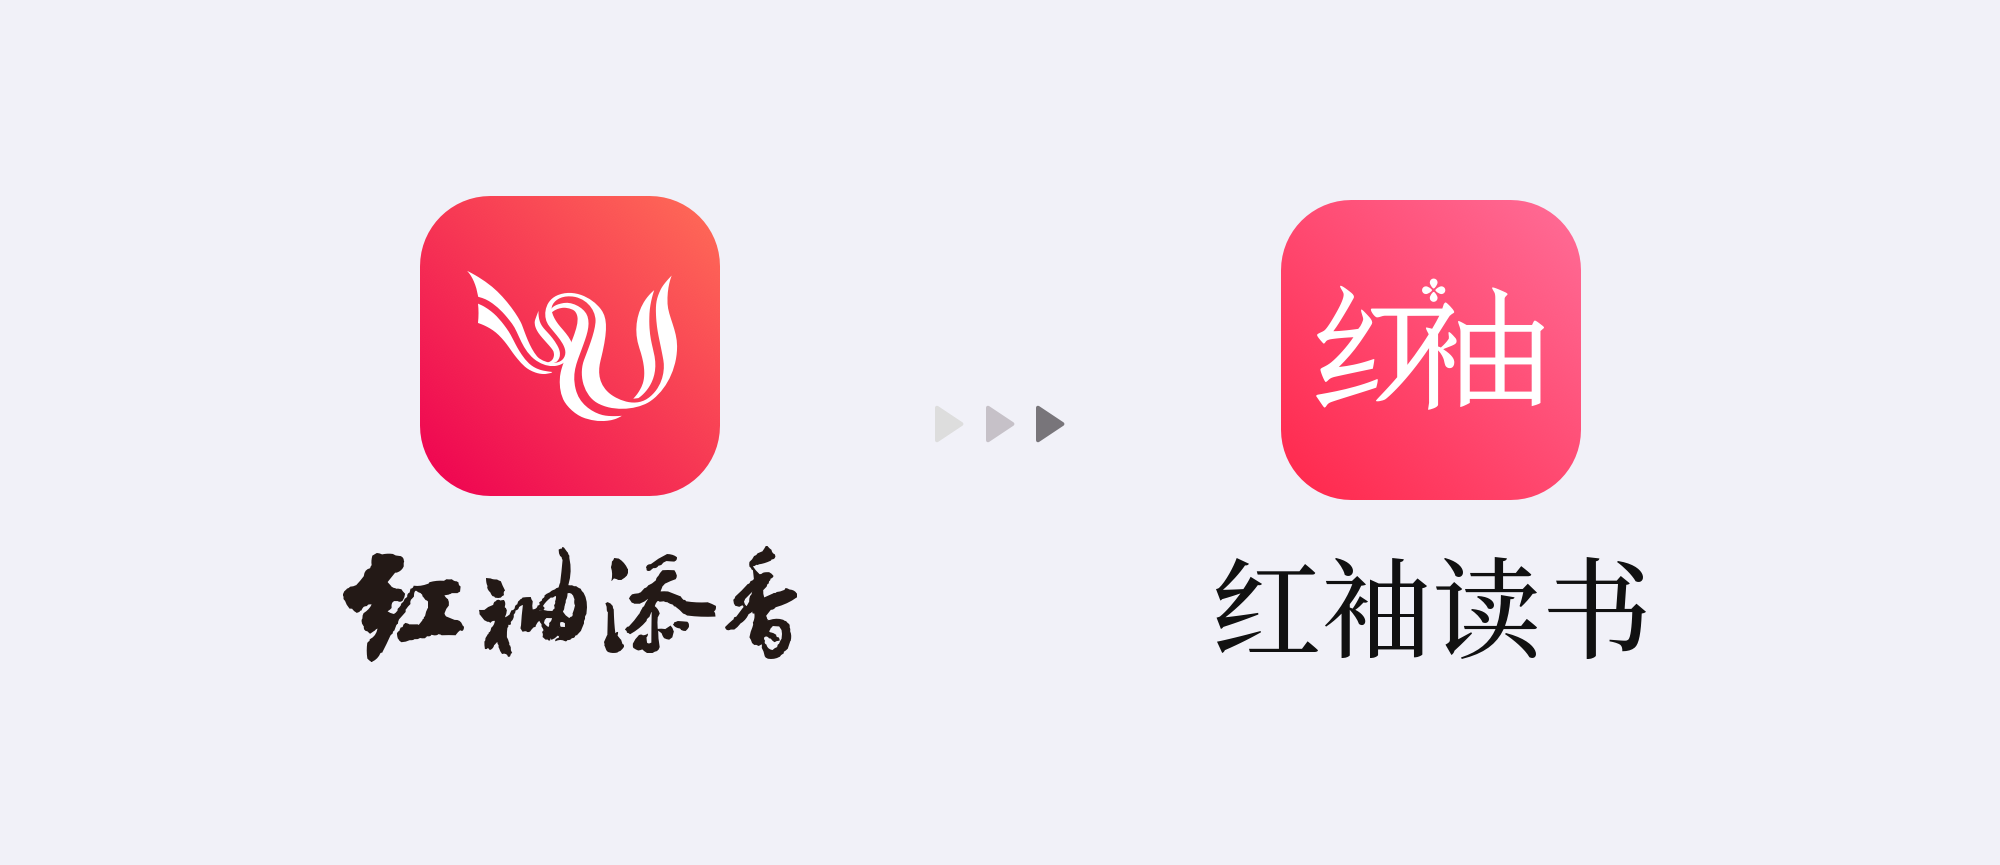 旧版app logo沿用了web版红袖添香的logo,形象取自袖字,因年代久远